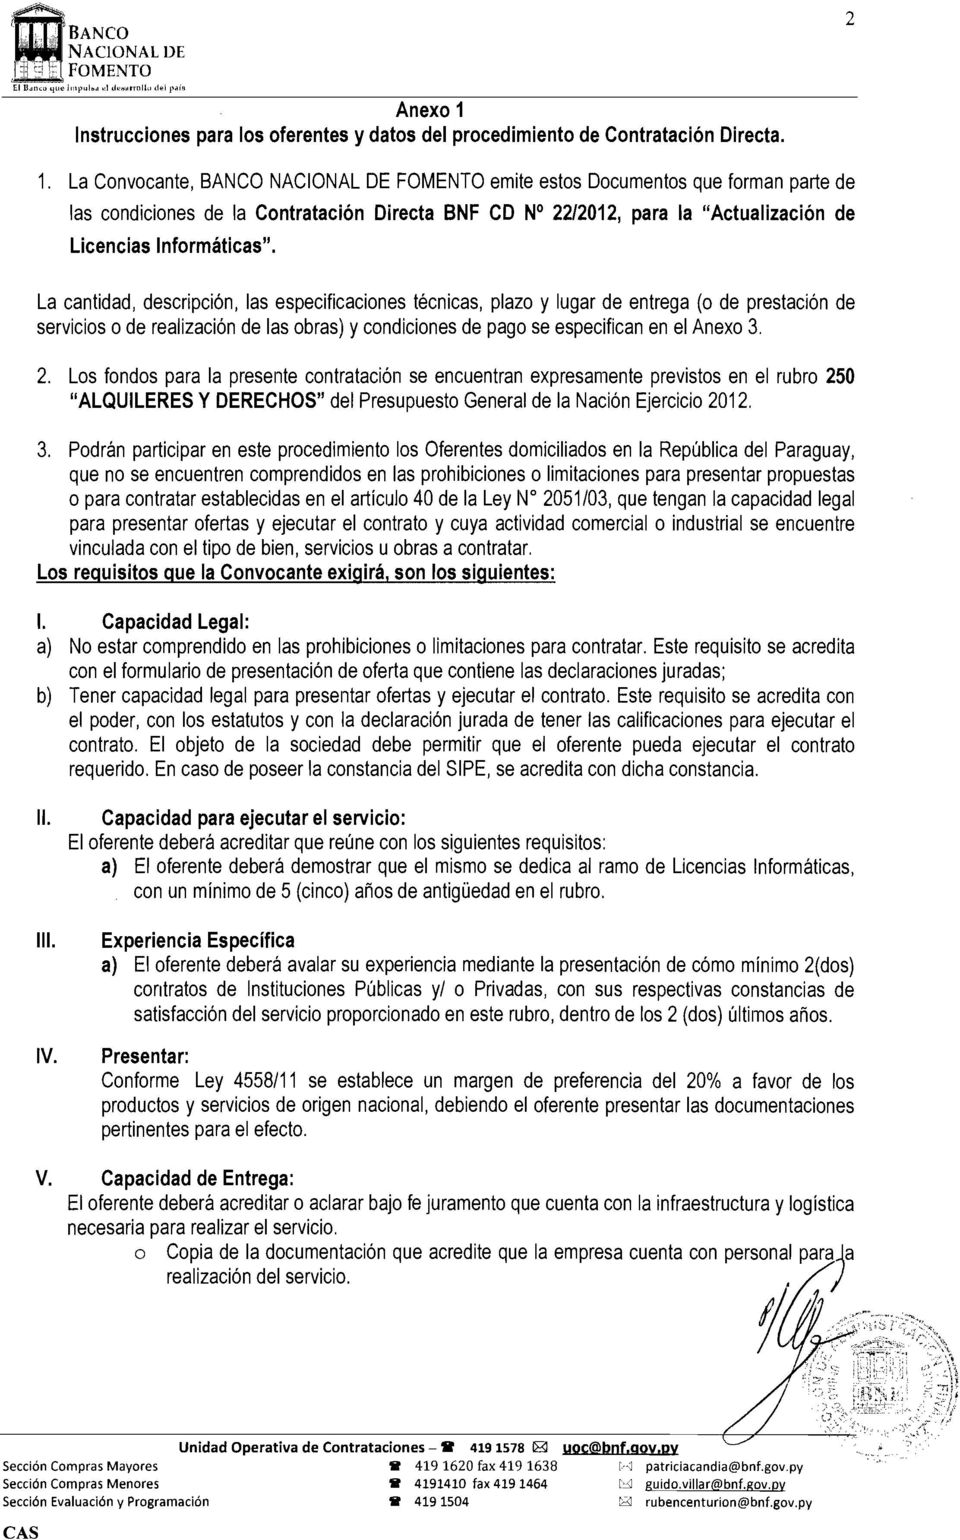 La Convocante, BANCO NACIONAL DE FOMENTO emite estos Documentos que forman parte de las condiciones de la Contratación Directa BNF CD N 22/2012, para la "Actualización de Licencias Informáticas".